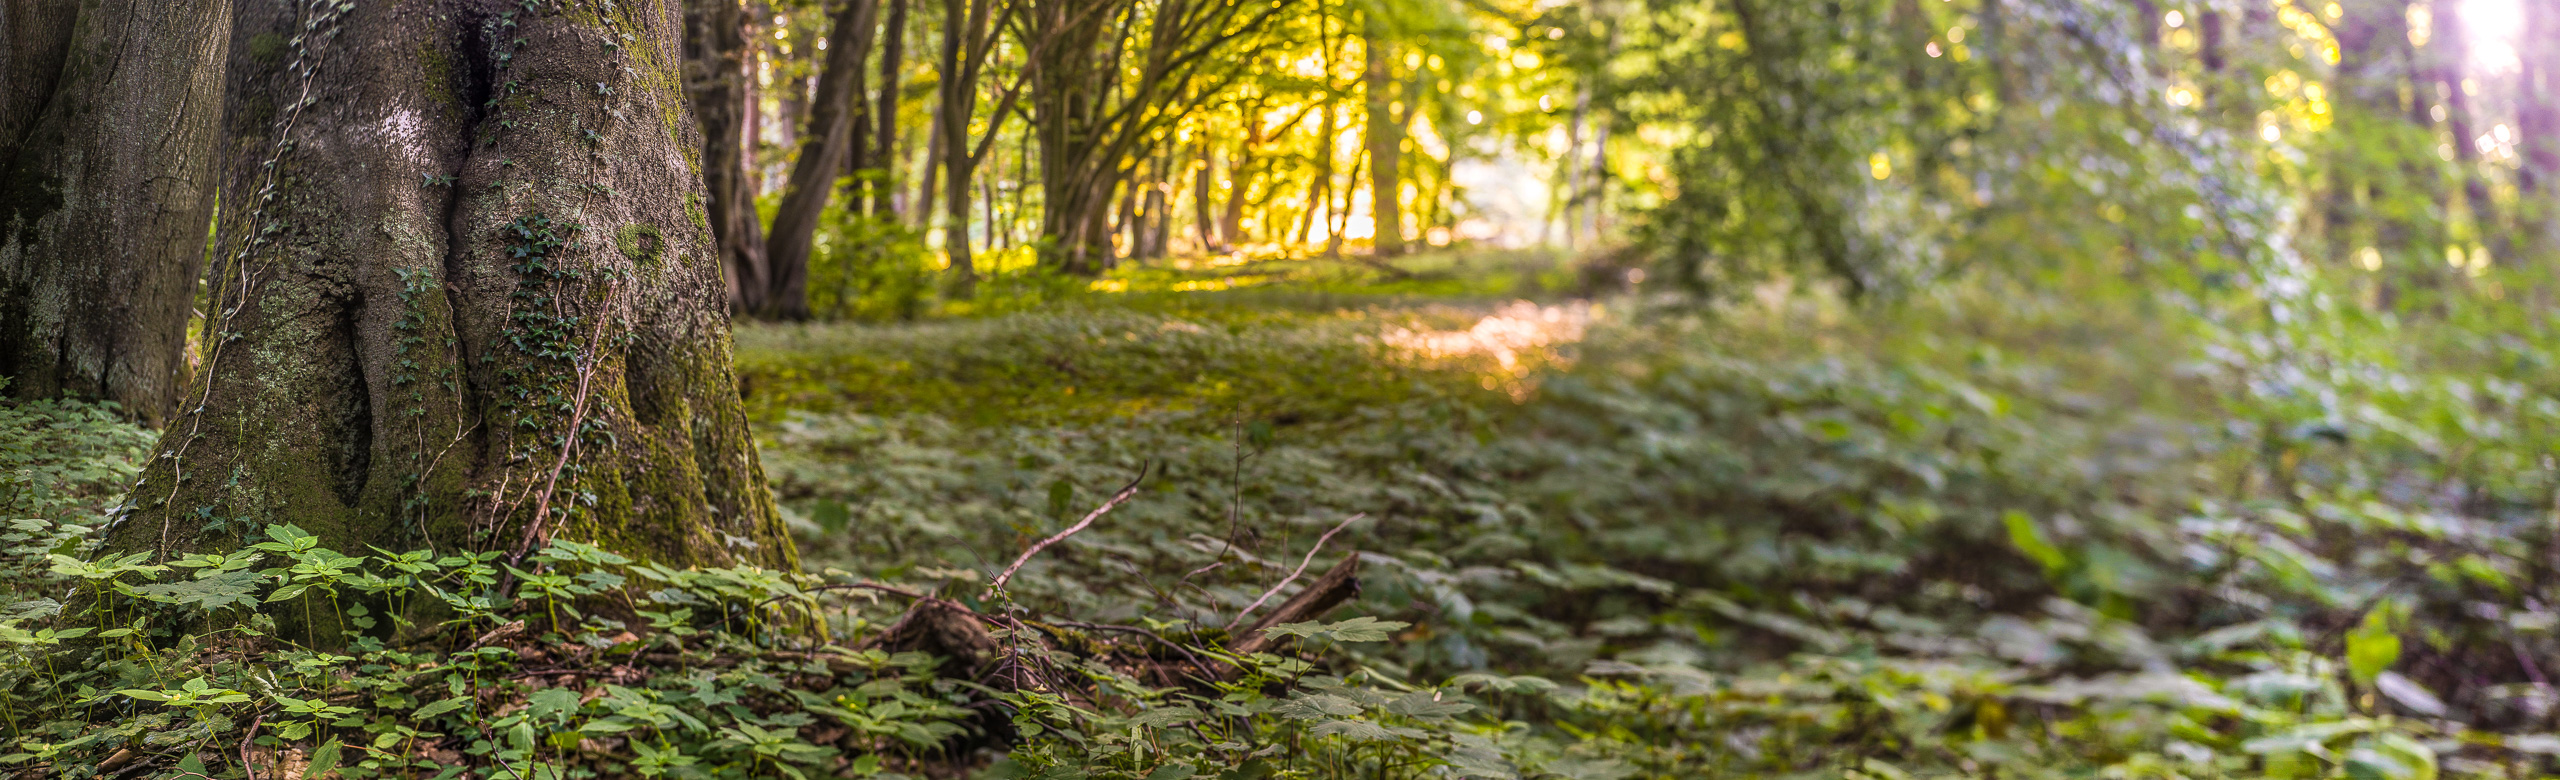 Ein knorriger, efeubewachsener Baumstamm auf einer Waldlichtung gegen die Sonne fotografiert   